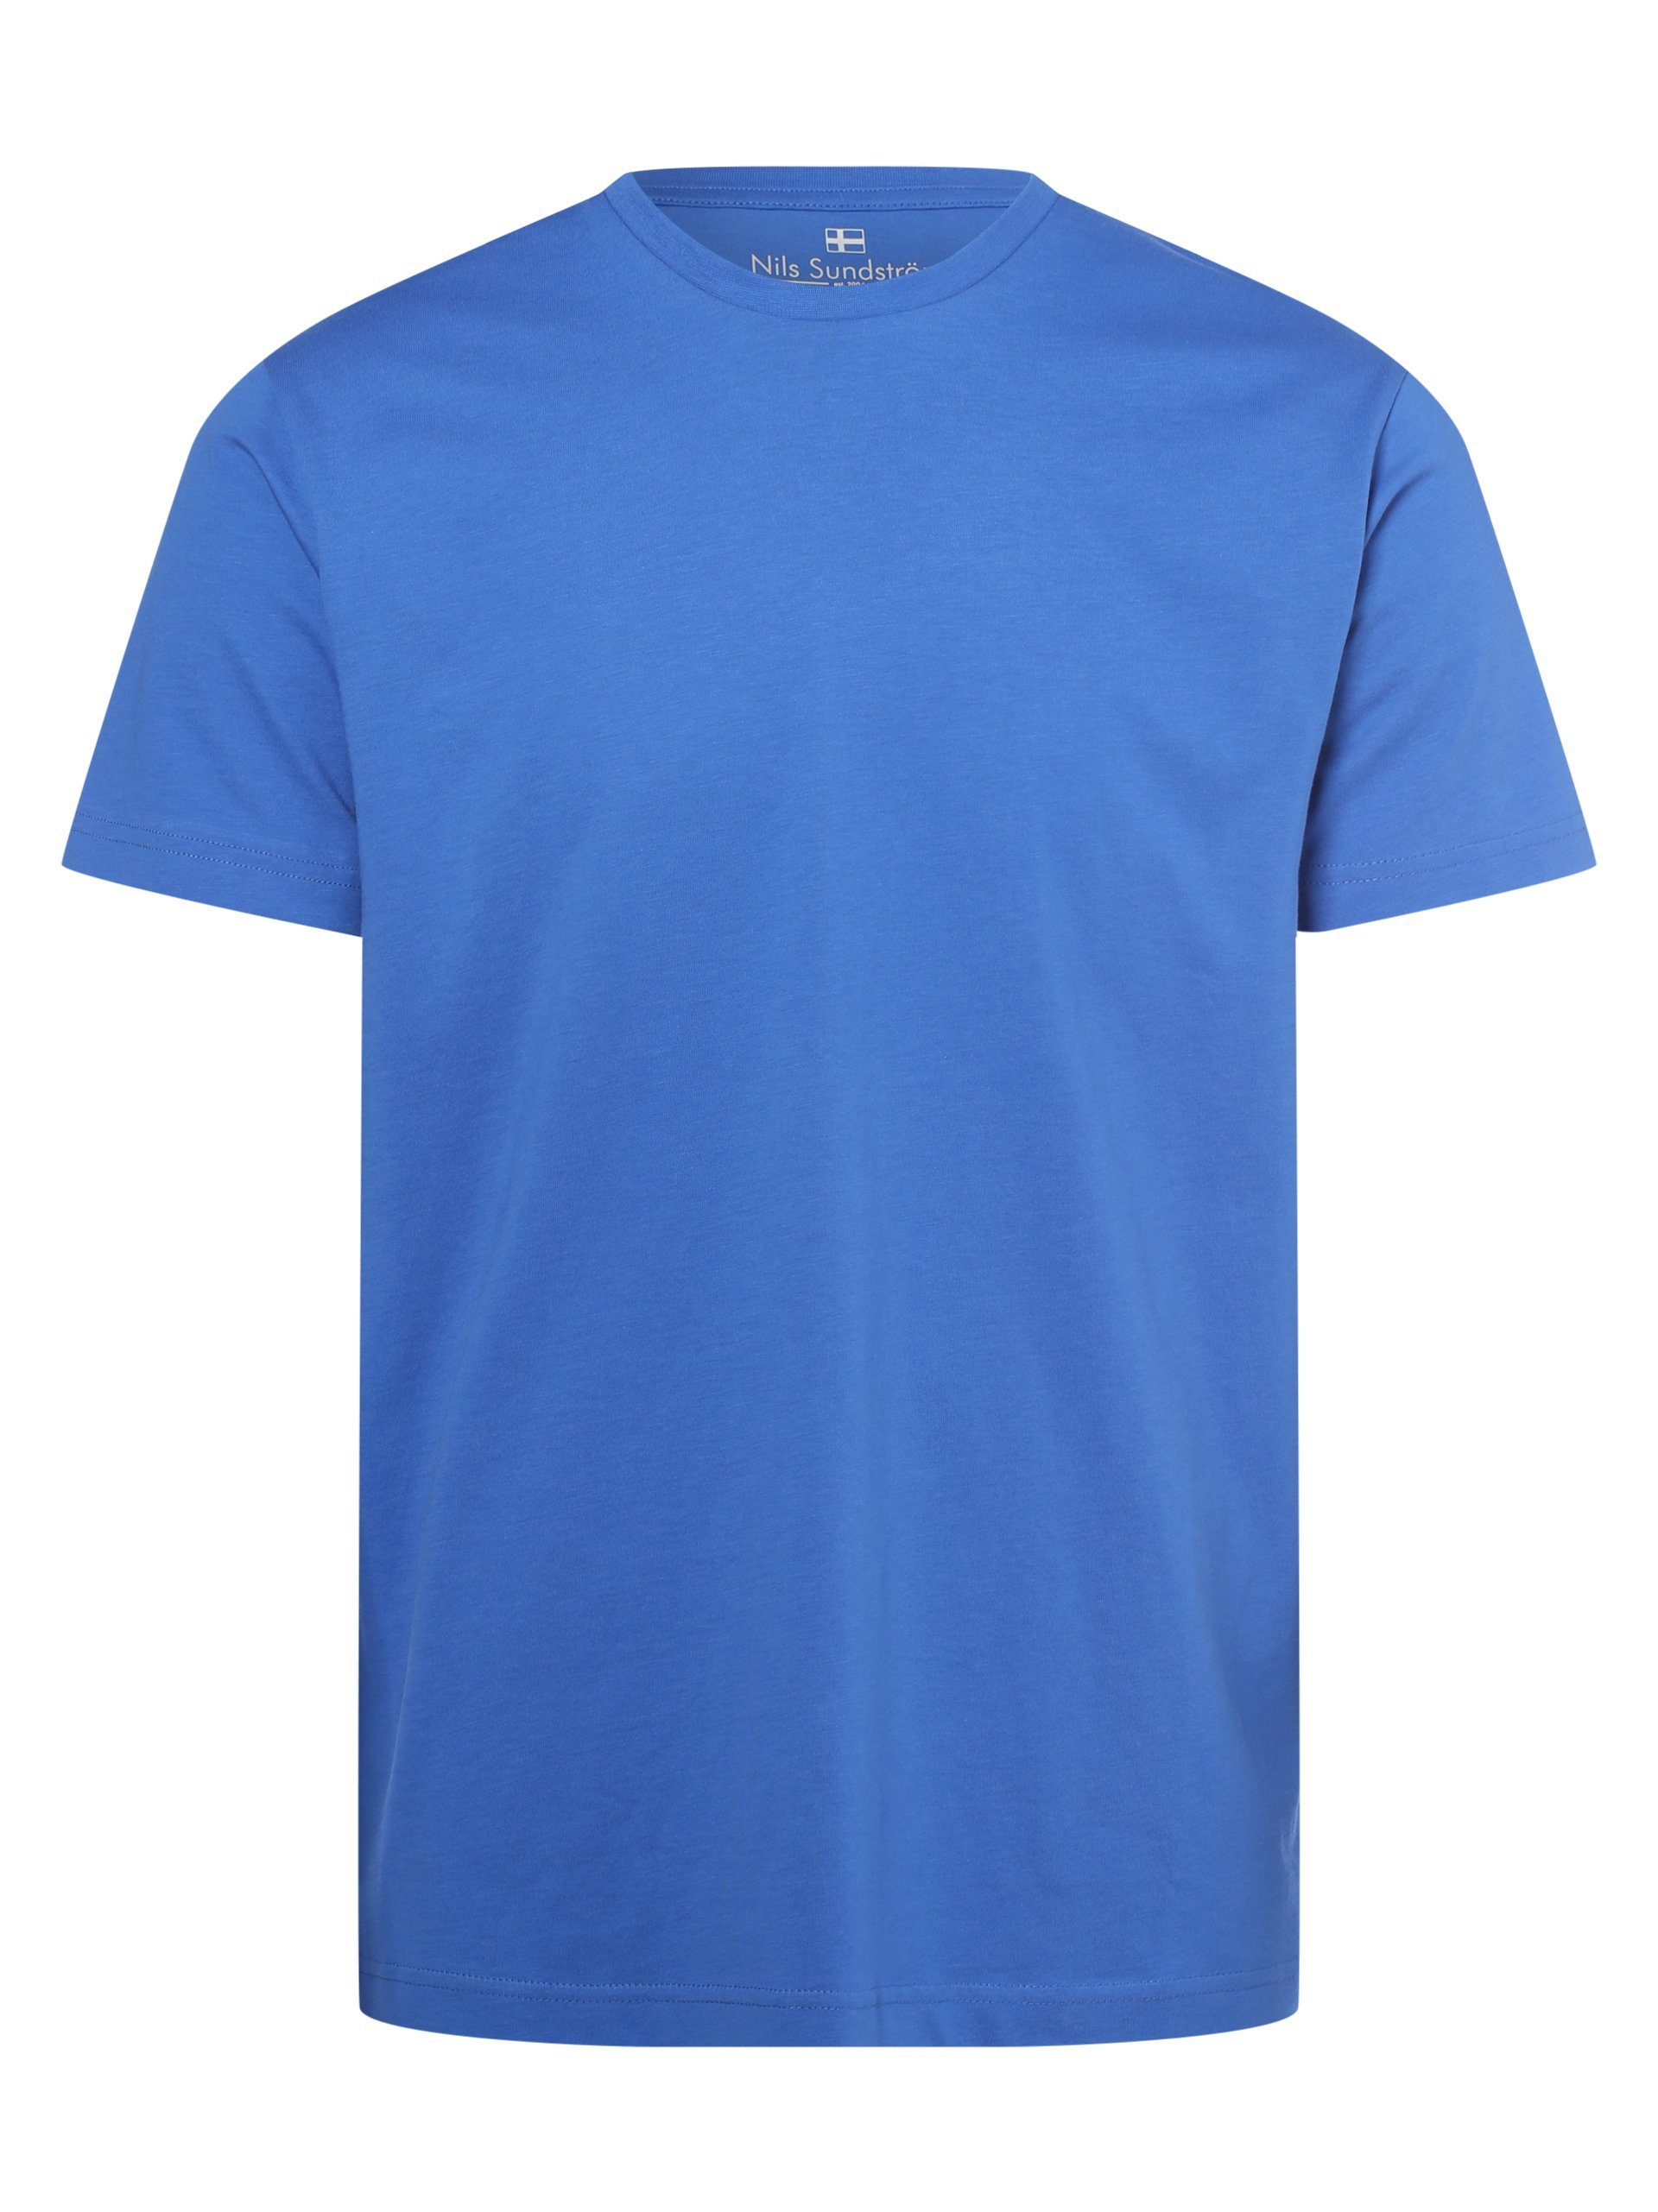 Sundström T-Shirt blau Nils